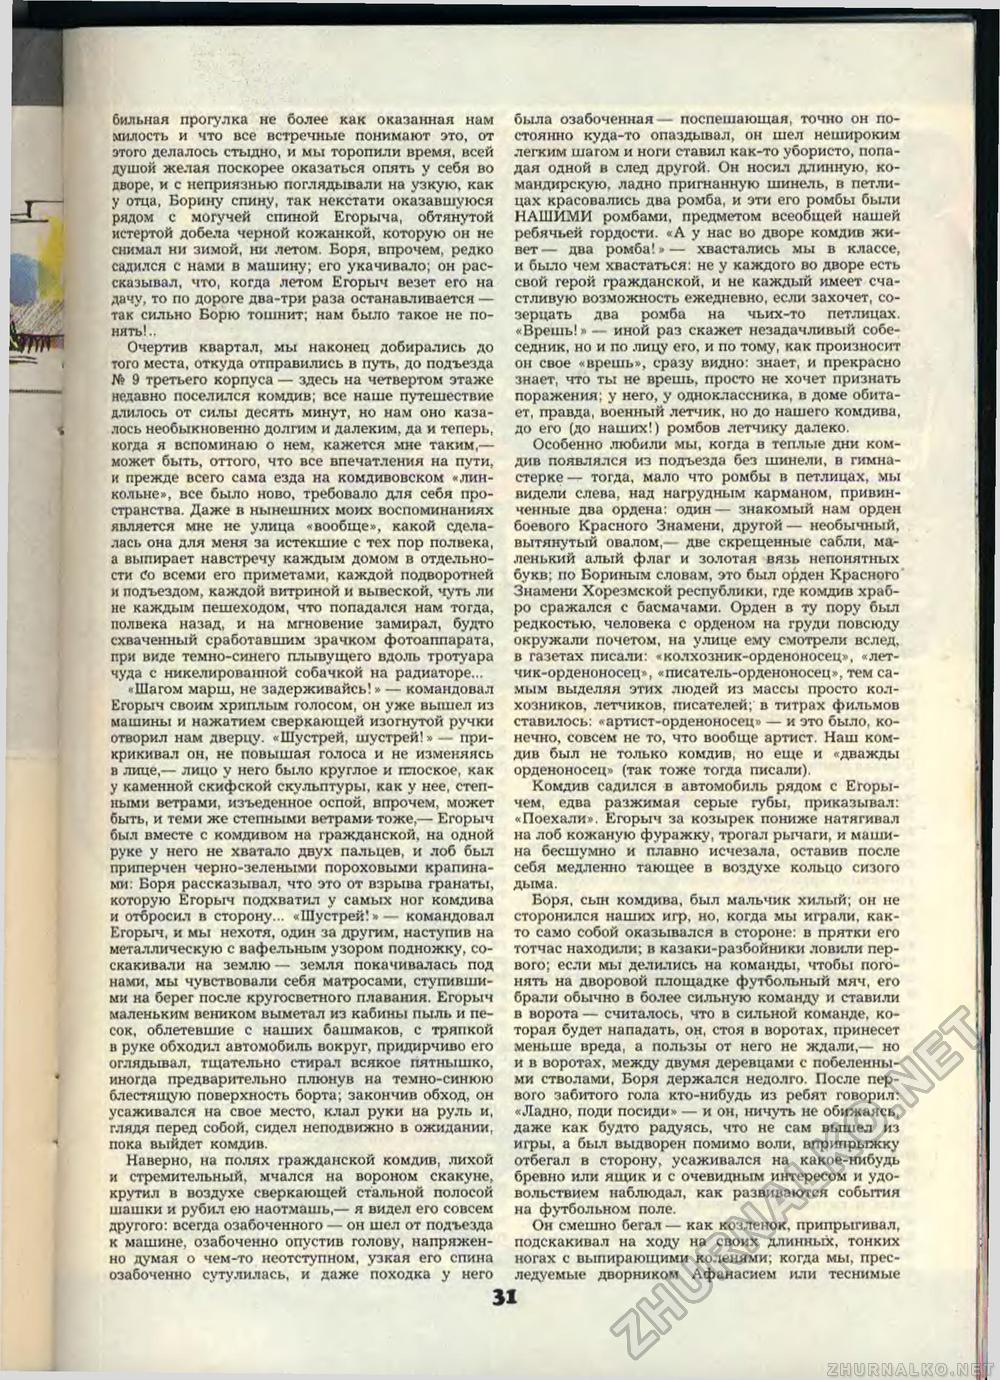  1989-11,  33